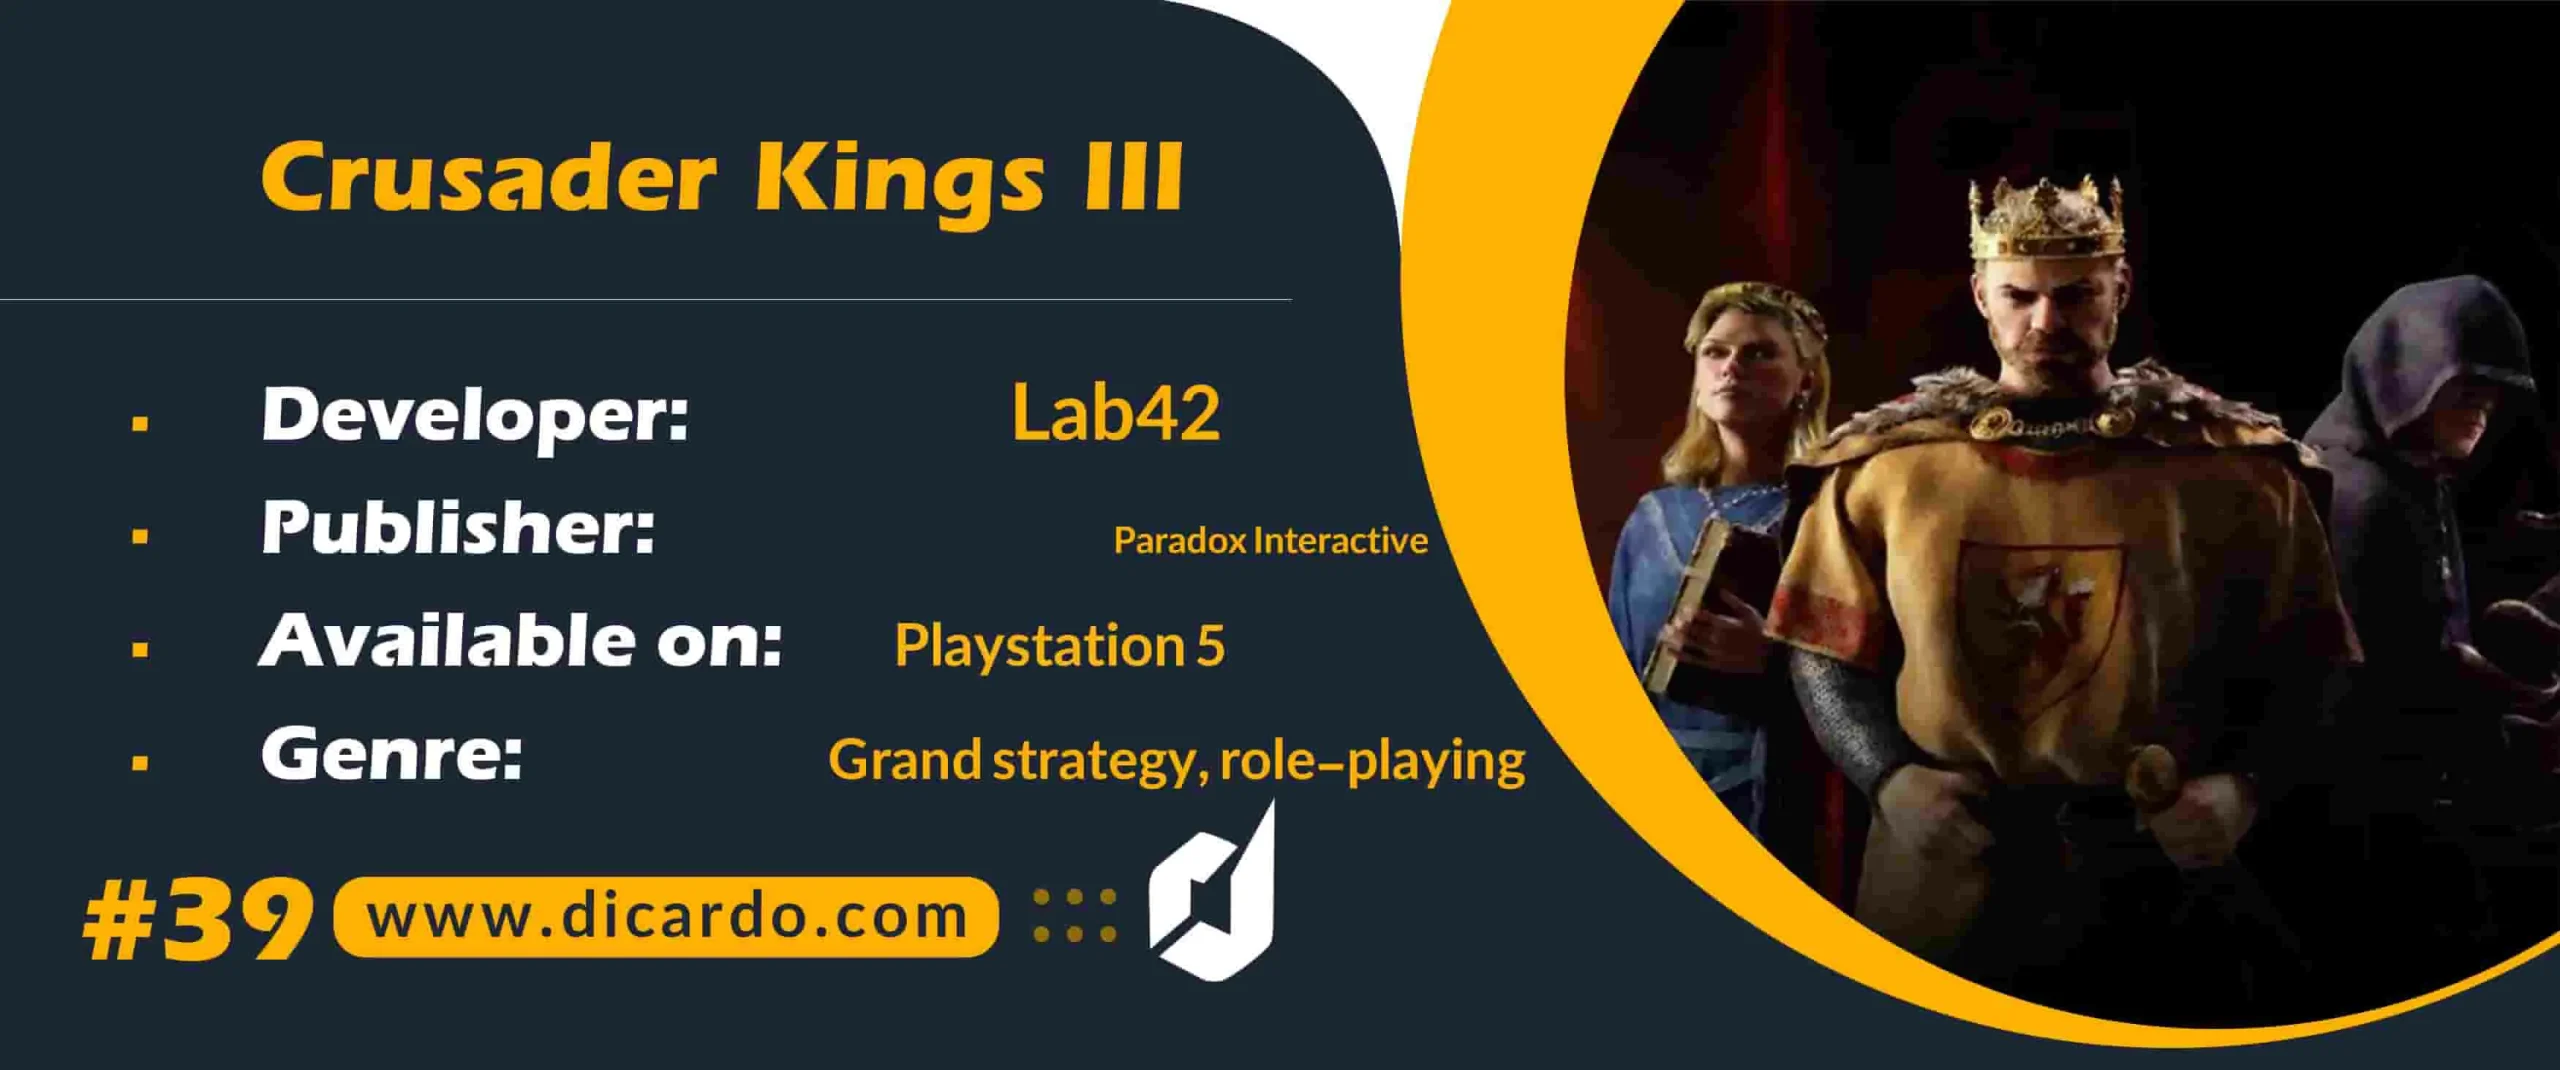 #39 کراسیدر کینگز 3 Crusader Kings III از برترین بازیهای PS5 استراتژیک